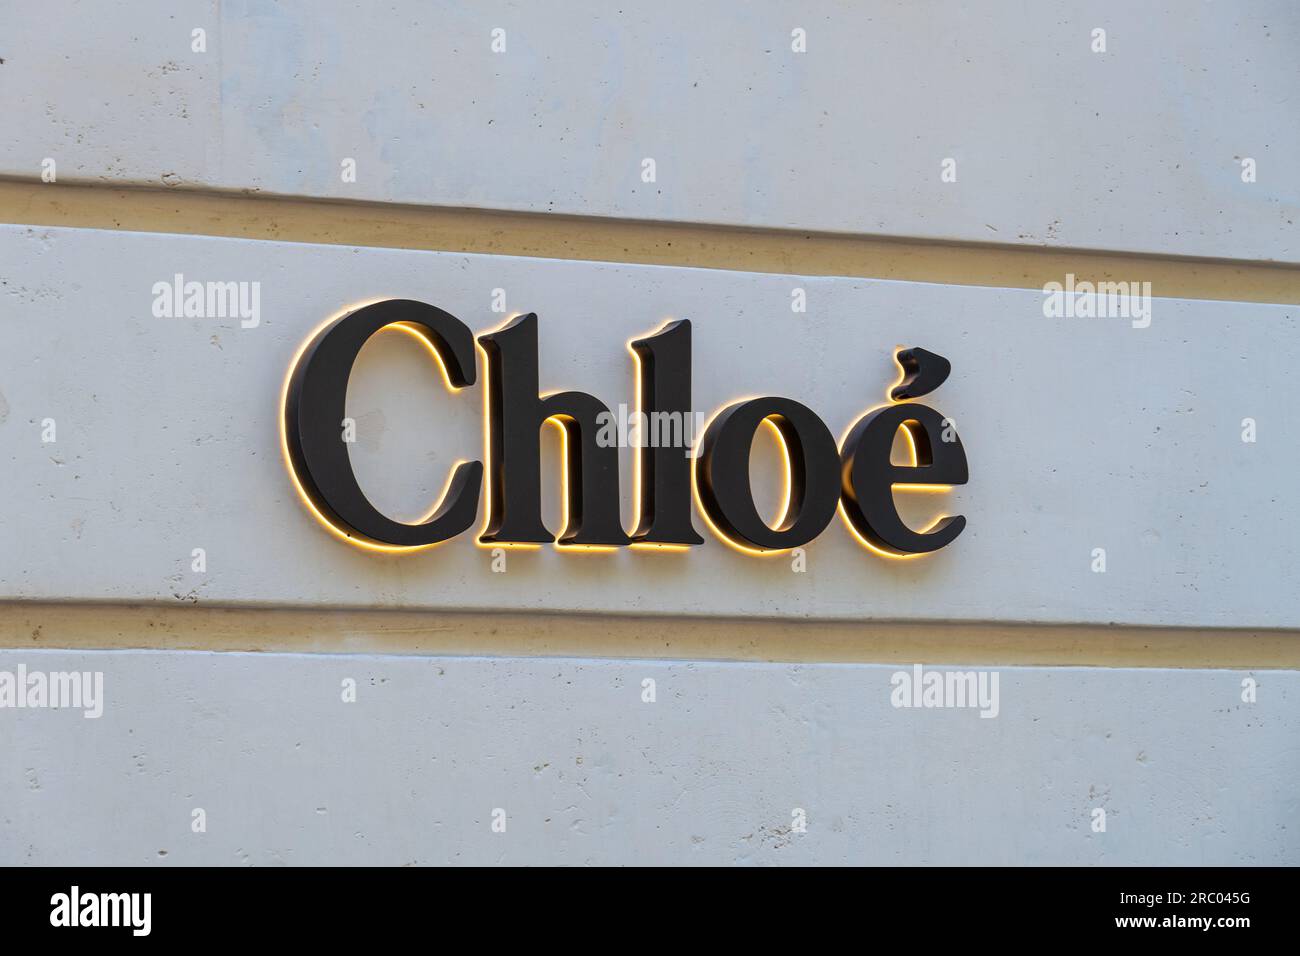 Enseigne d'une boutique Chloe dans le quartier des champs-Elysées à Paris,  France. Chloé est une marque française spécialisée dans la mode et le luxe  Photo Stock - Alamy